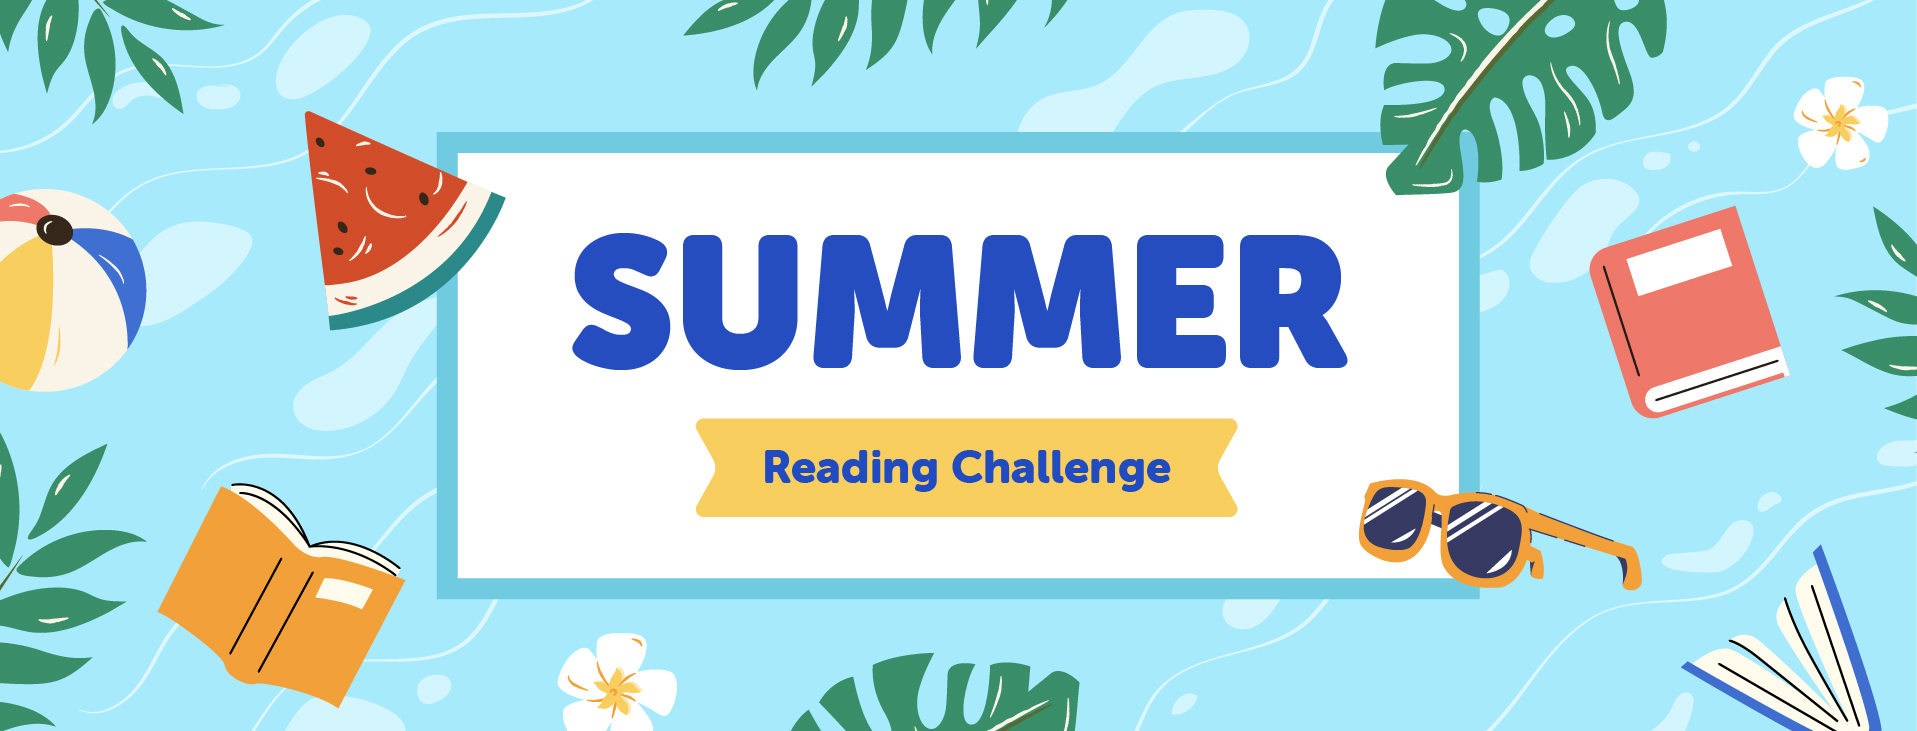 reading challenge